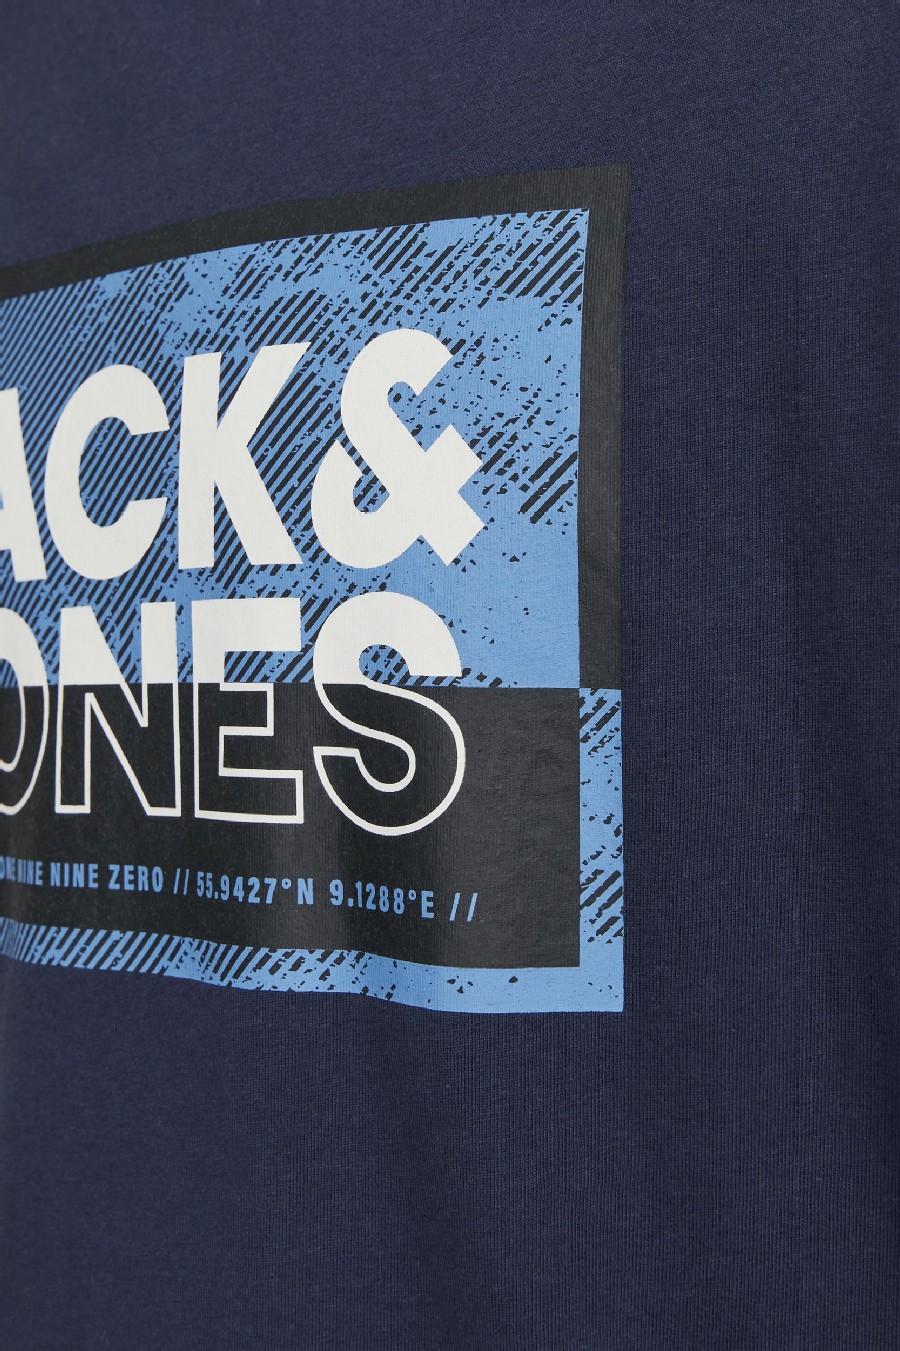 Marškinėliai JACK & JONES 12253442-Navy-Blazer